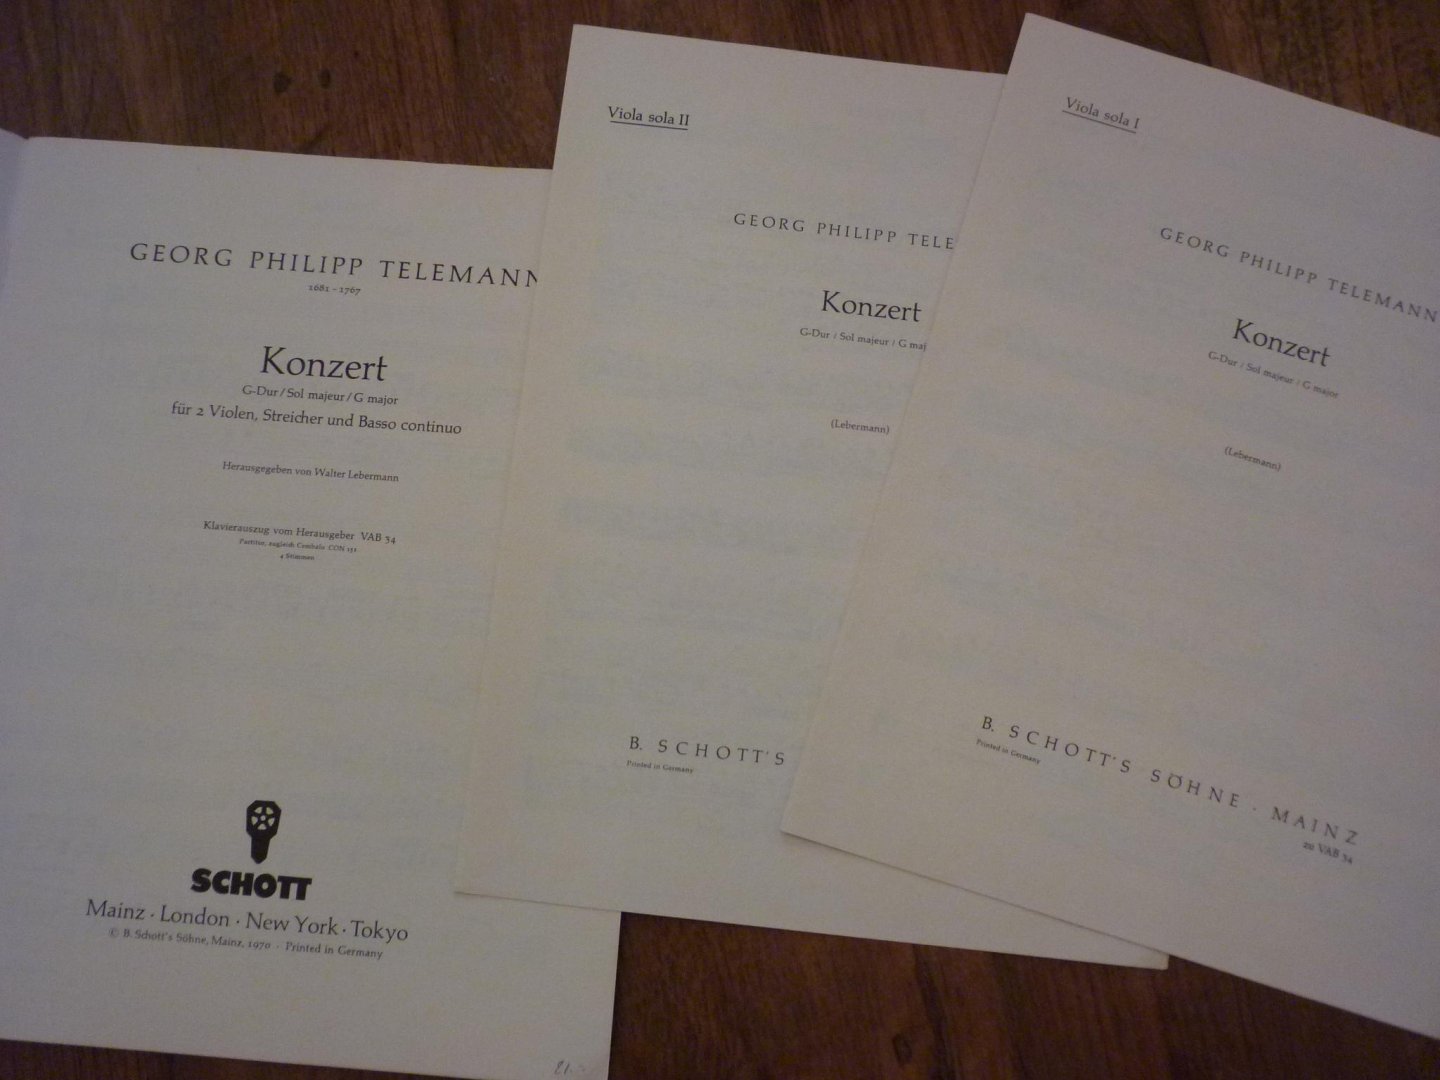 Telemann, Georg Philipp (1681-1767) - Concerto G-Dur; voor 2 violen, strijkers, basso continuo; Klavierauszug VAB 34 (herausgegeben von Walter Lebermann)